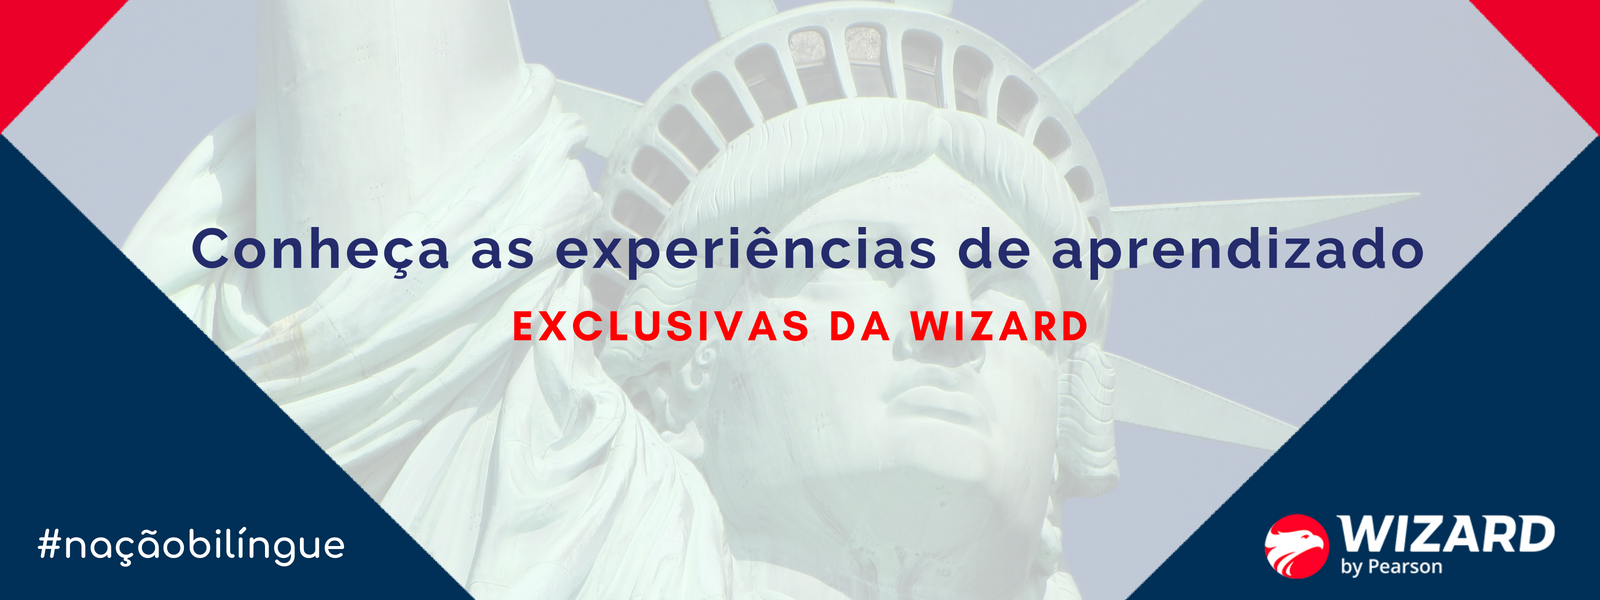 Wizard: 30% de desconto no inglês ou espanhol